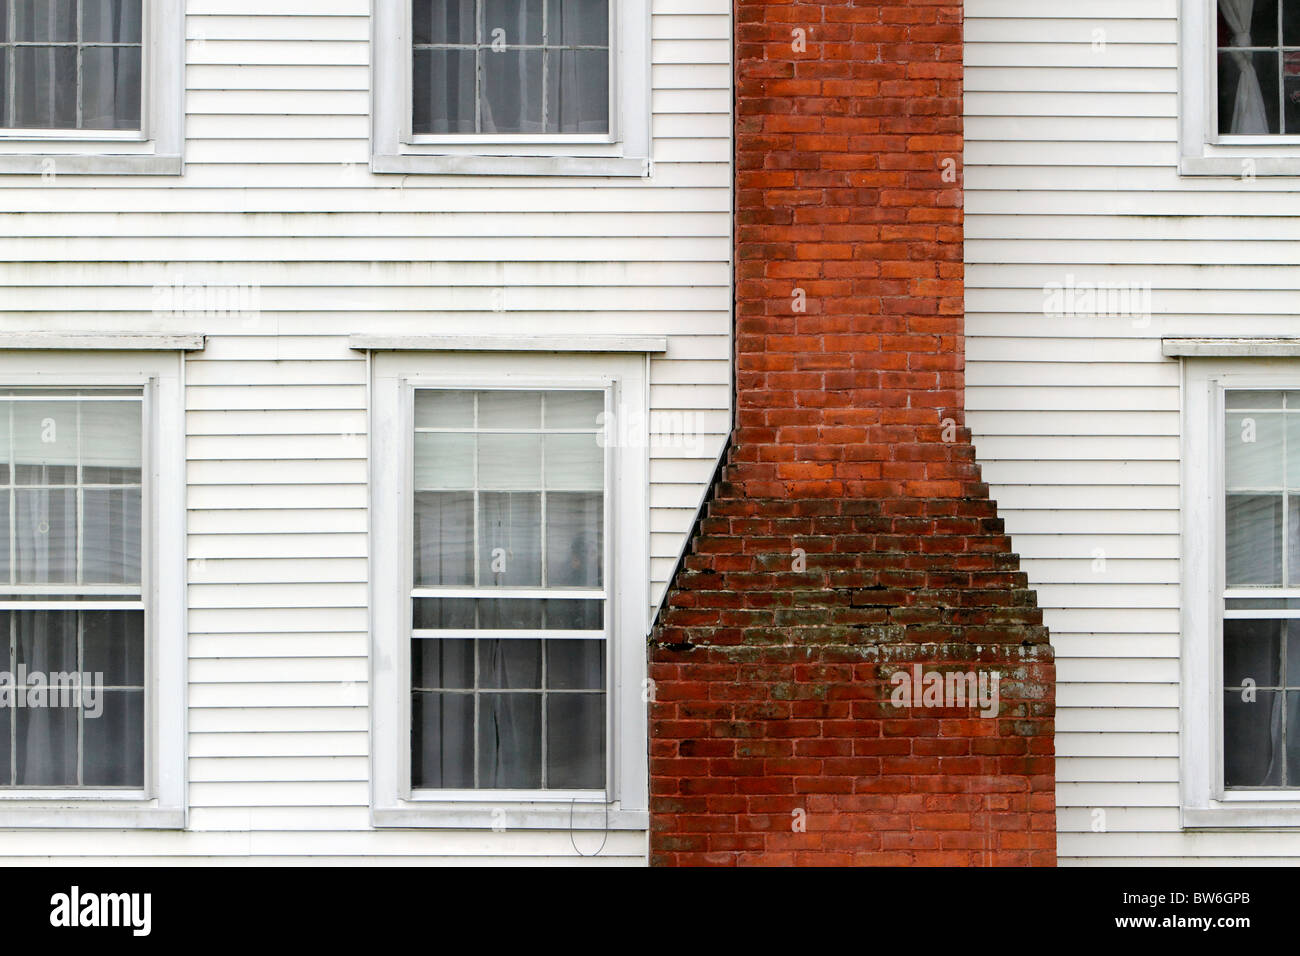 La Nuova Inghilterra Bianchi infissi casa ciminiera in mattoni Foto Stock